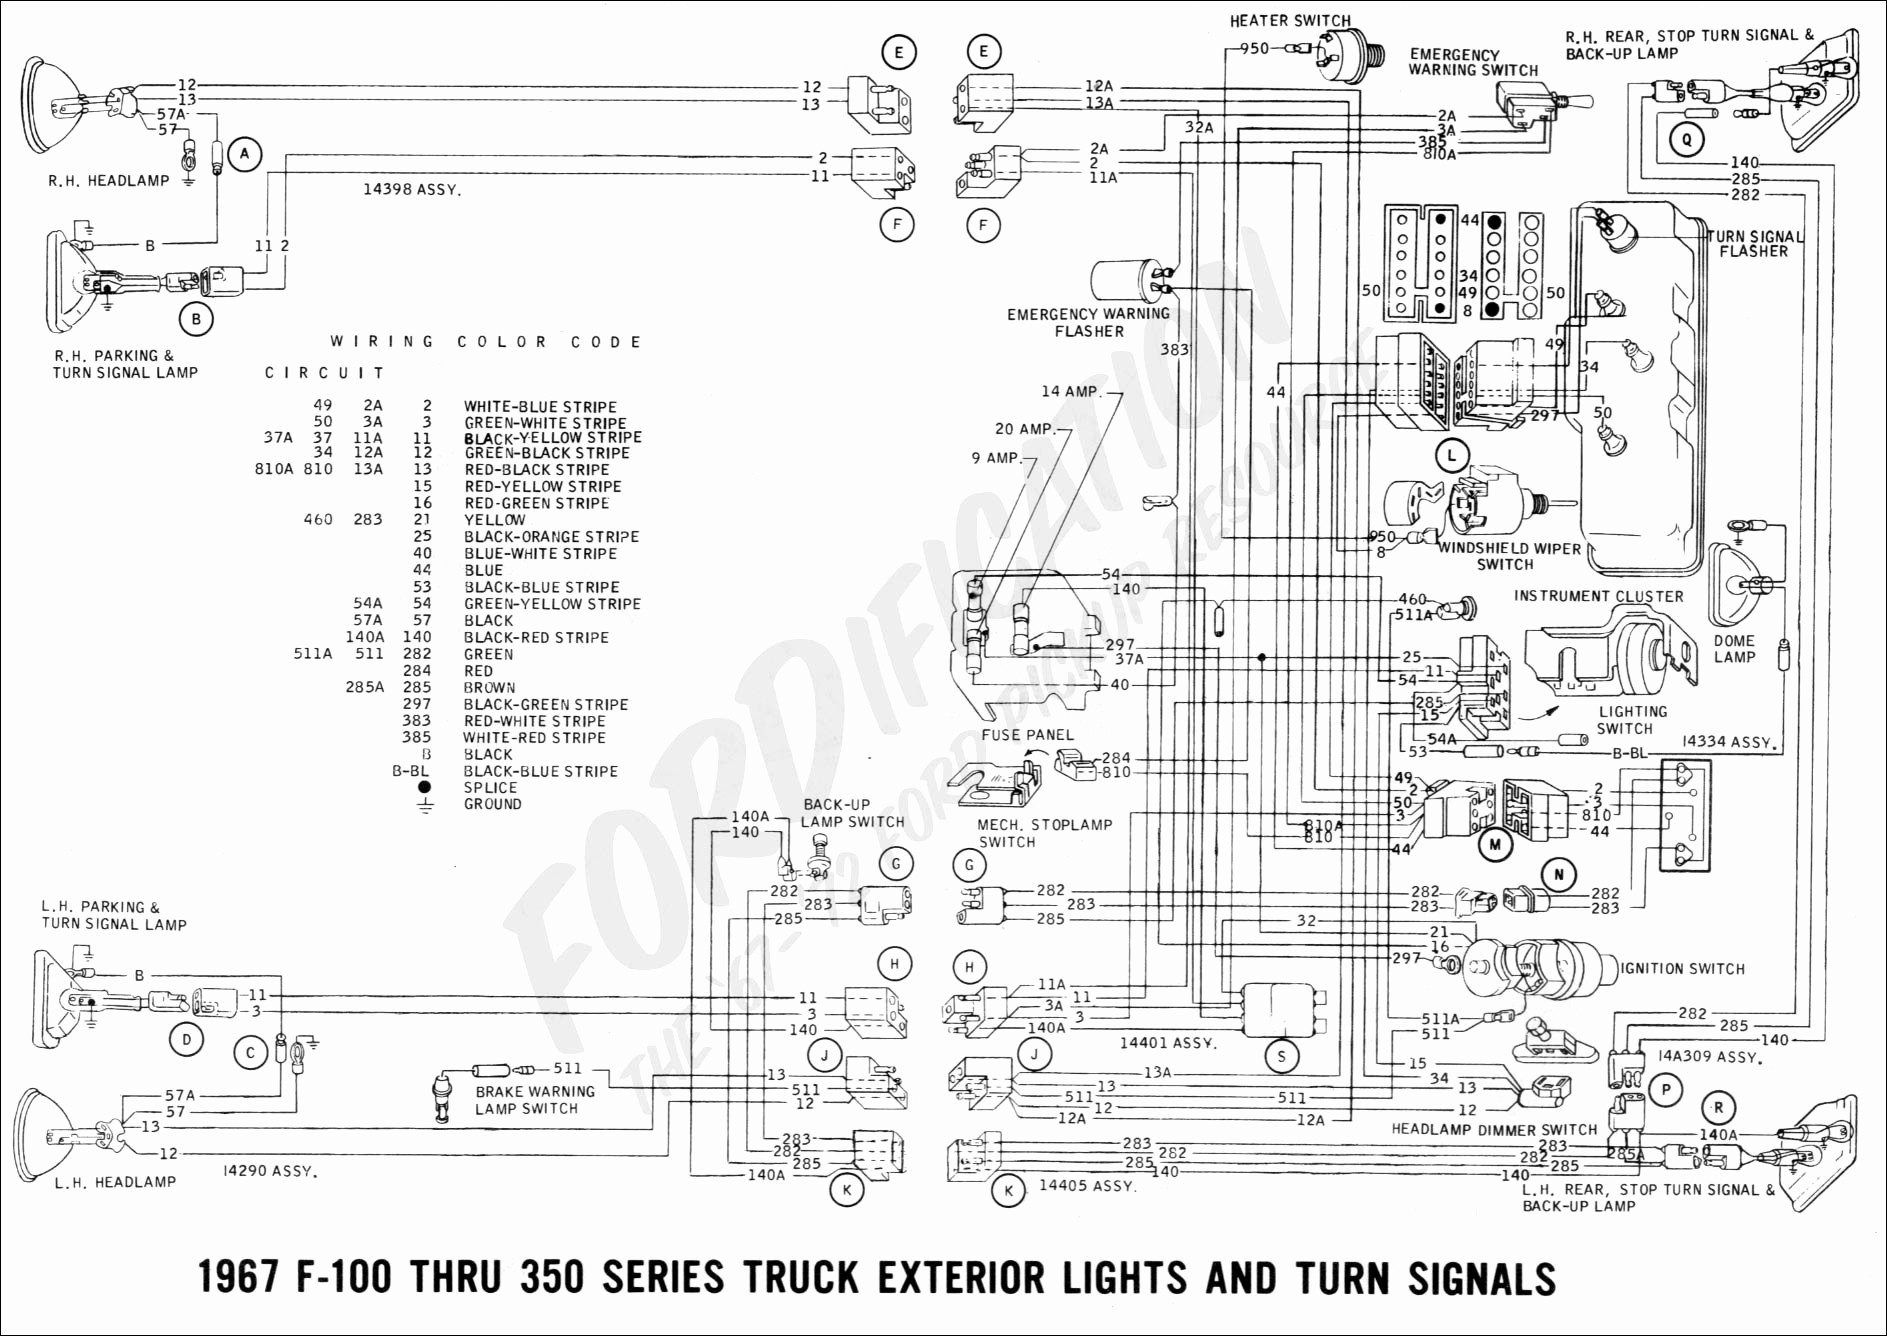 1968 Mustang Wiring Diagram Inspirational Turn Signal Wiring Diagram Turn Signal Wiring Diagram New Sw Em